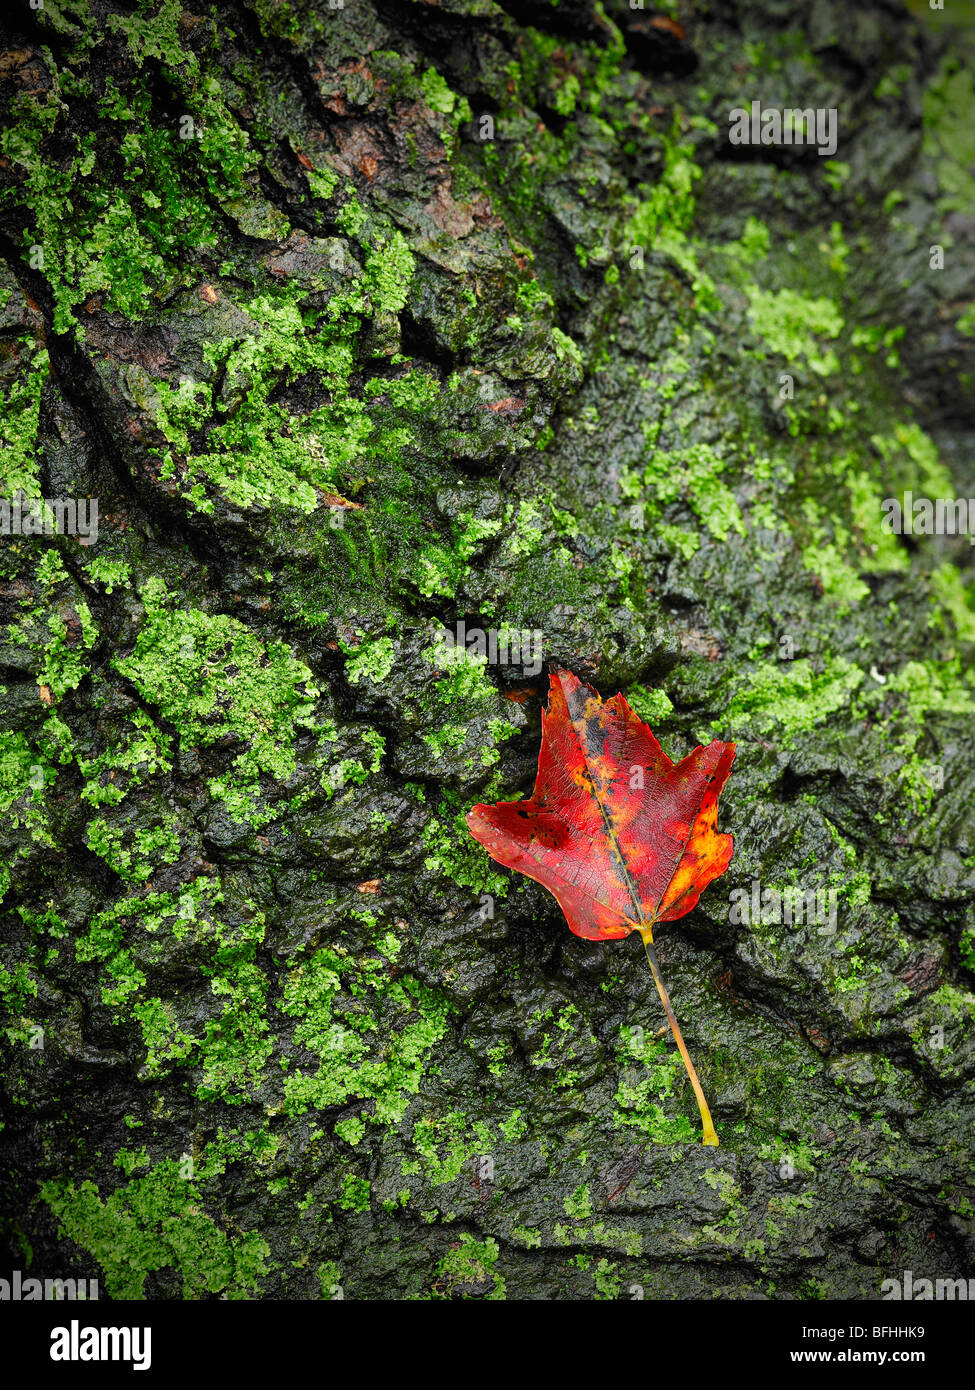 Red Maple Leaf & Verde muschio sulla corteccia di albero, in Pennsylvania, STATI UNITI D'AMERICA Foto Stock